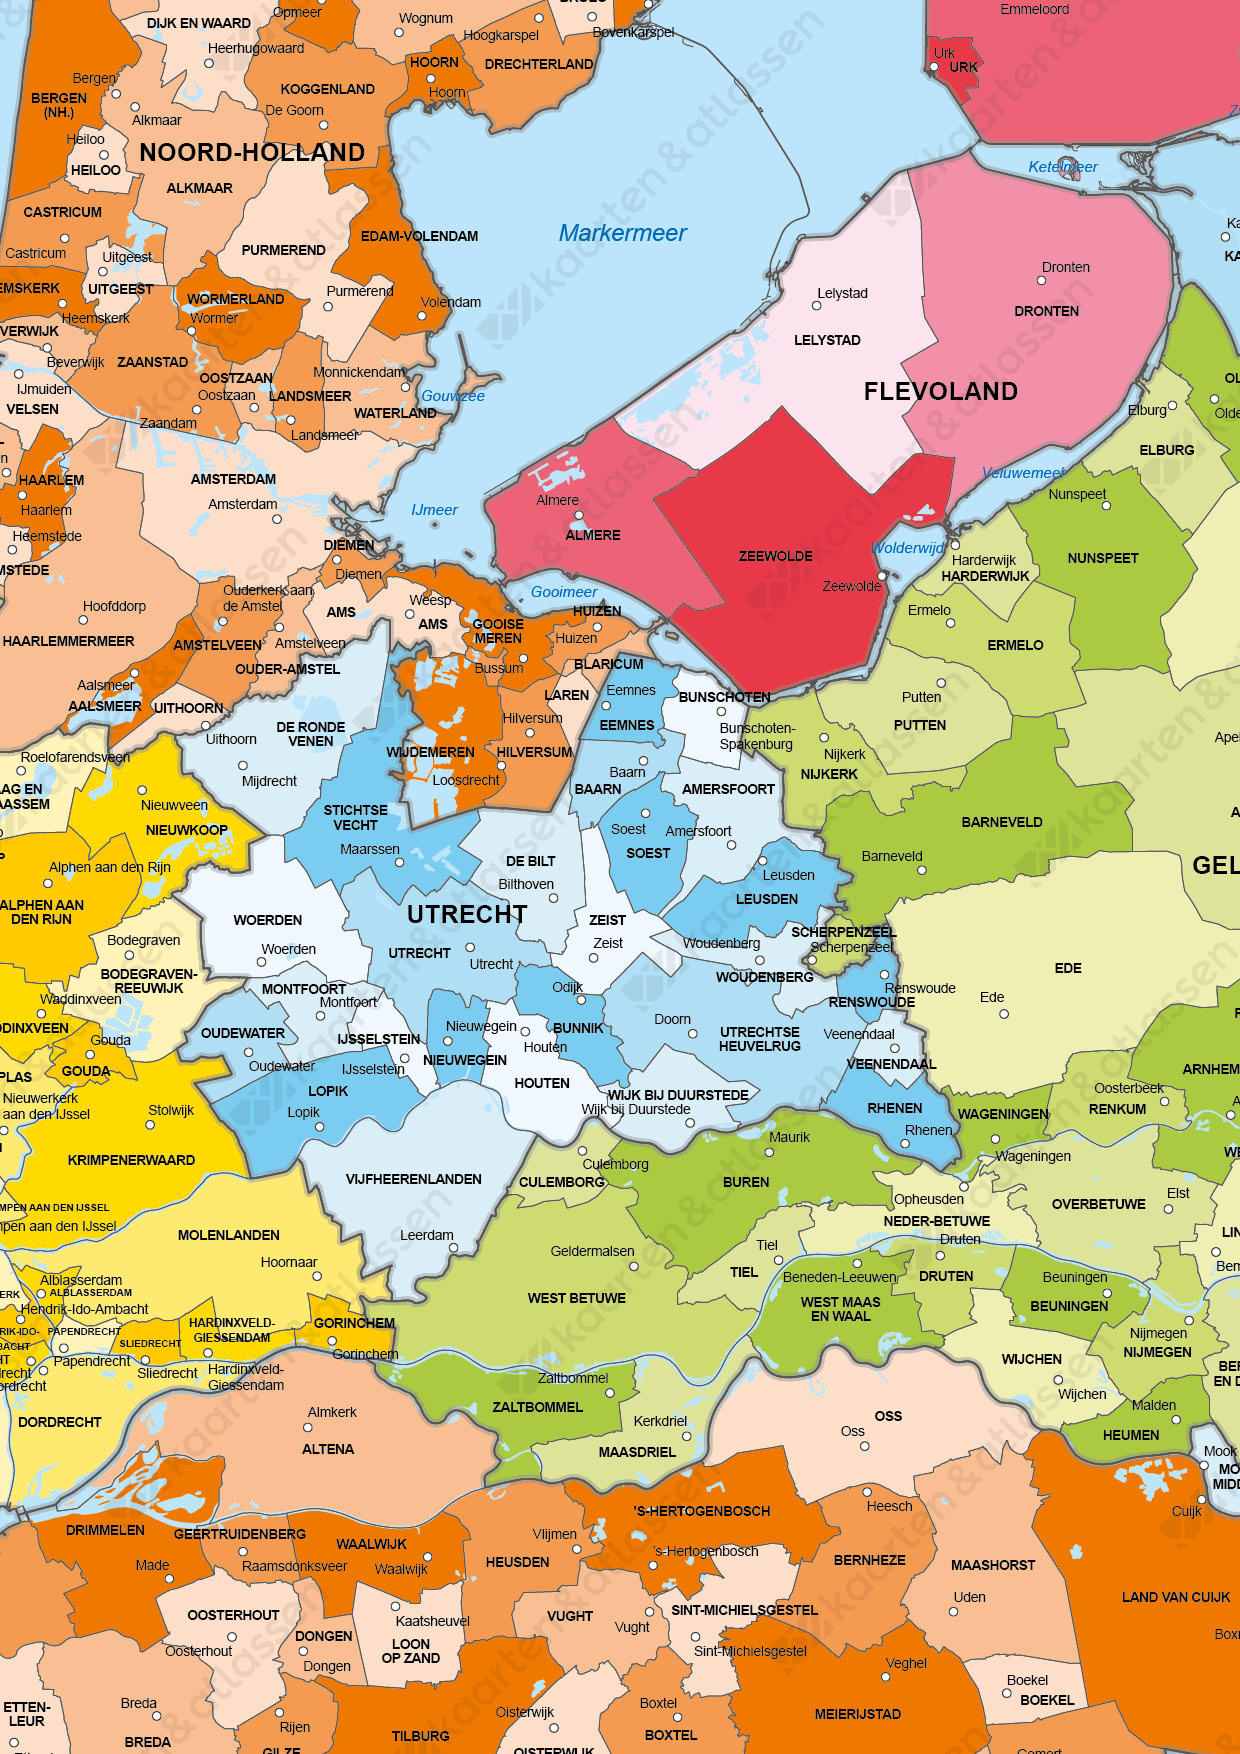 Beprikbare Gemeentekaart Nederland Provinciekleuren